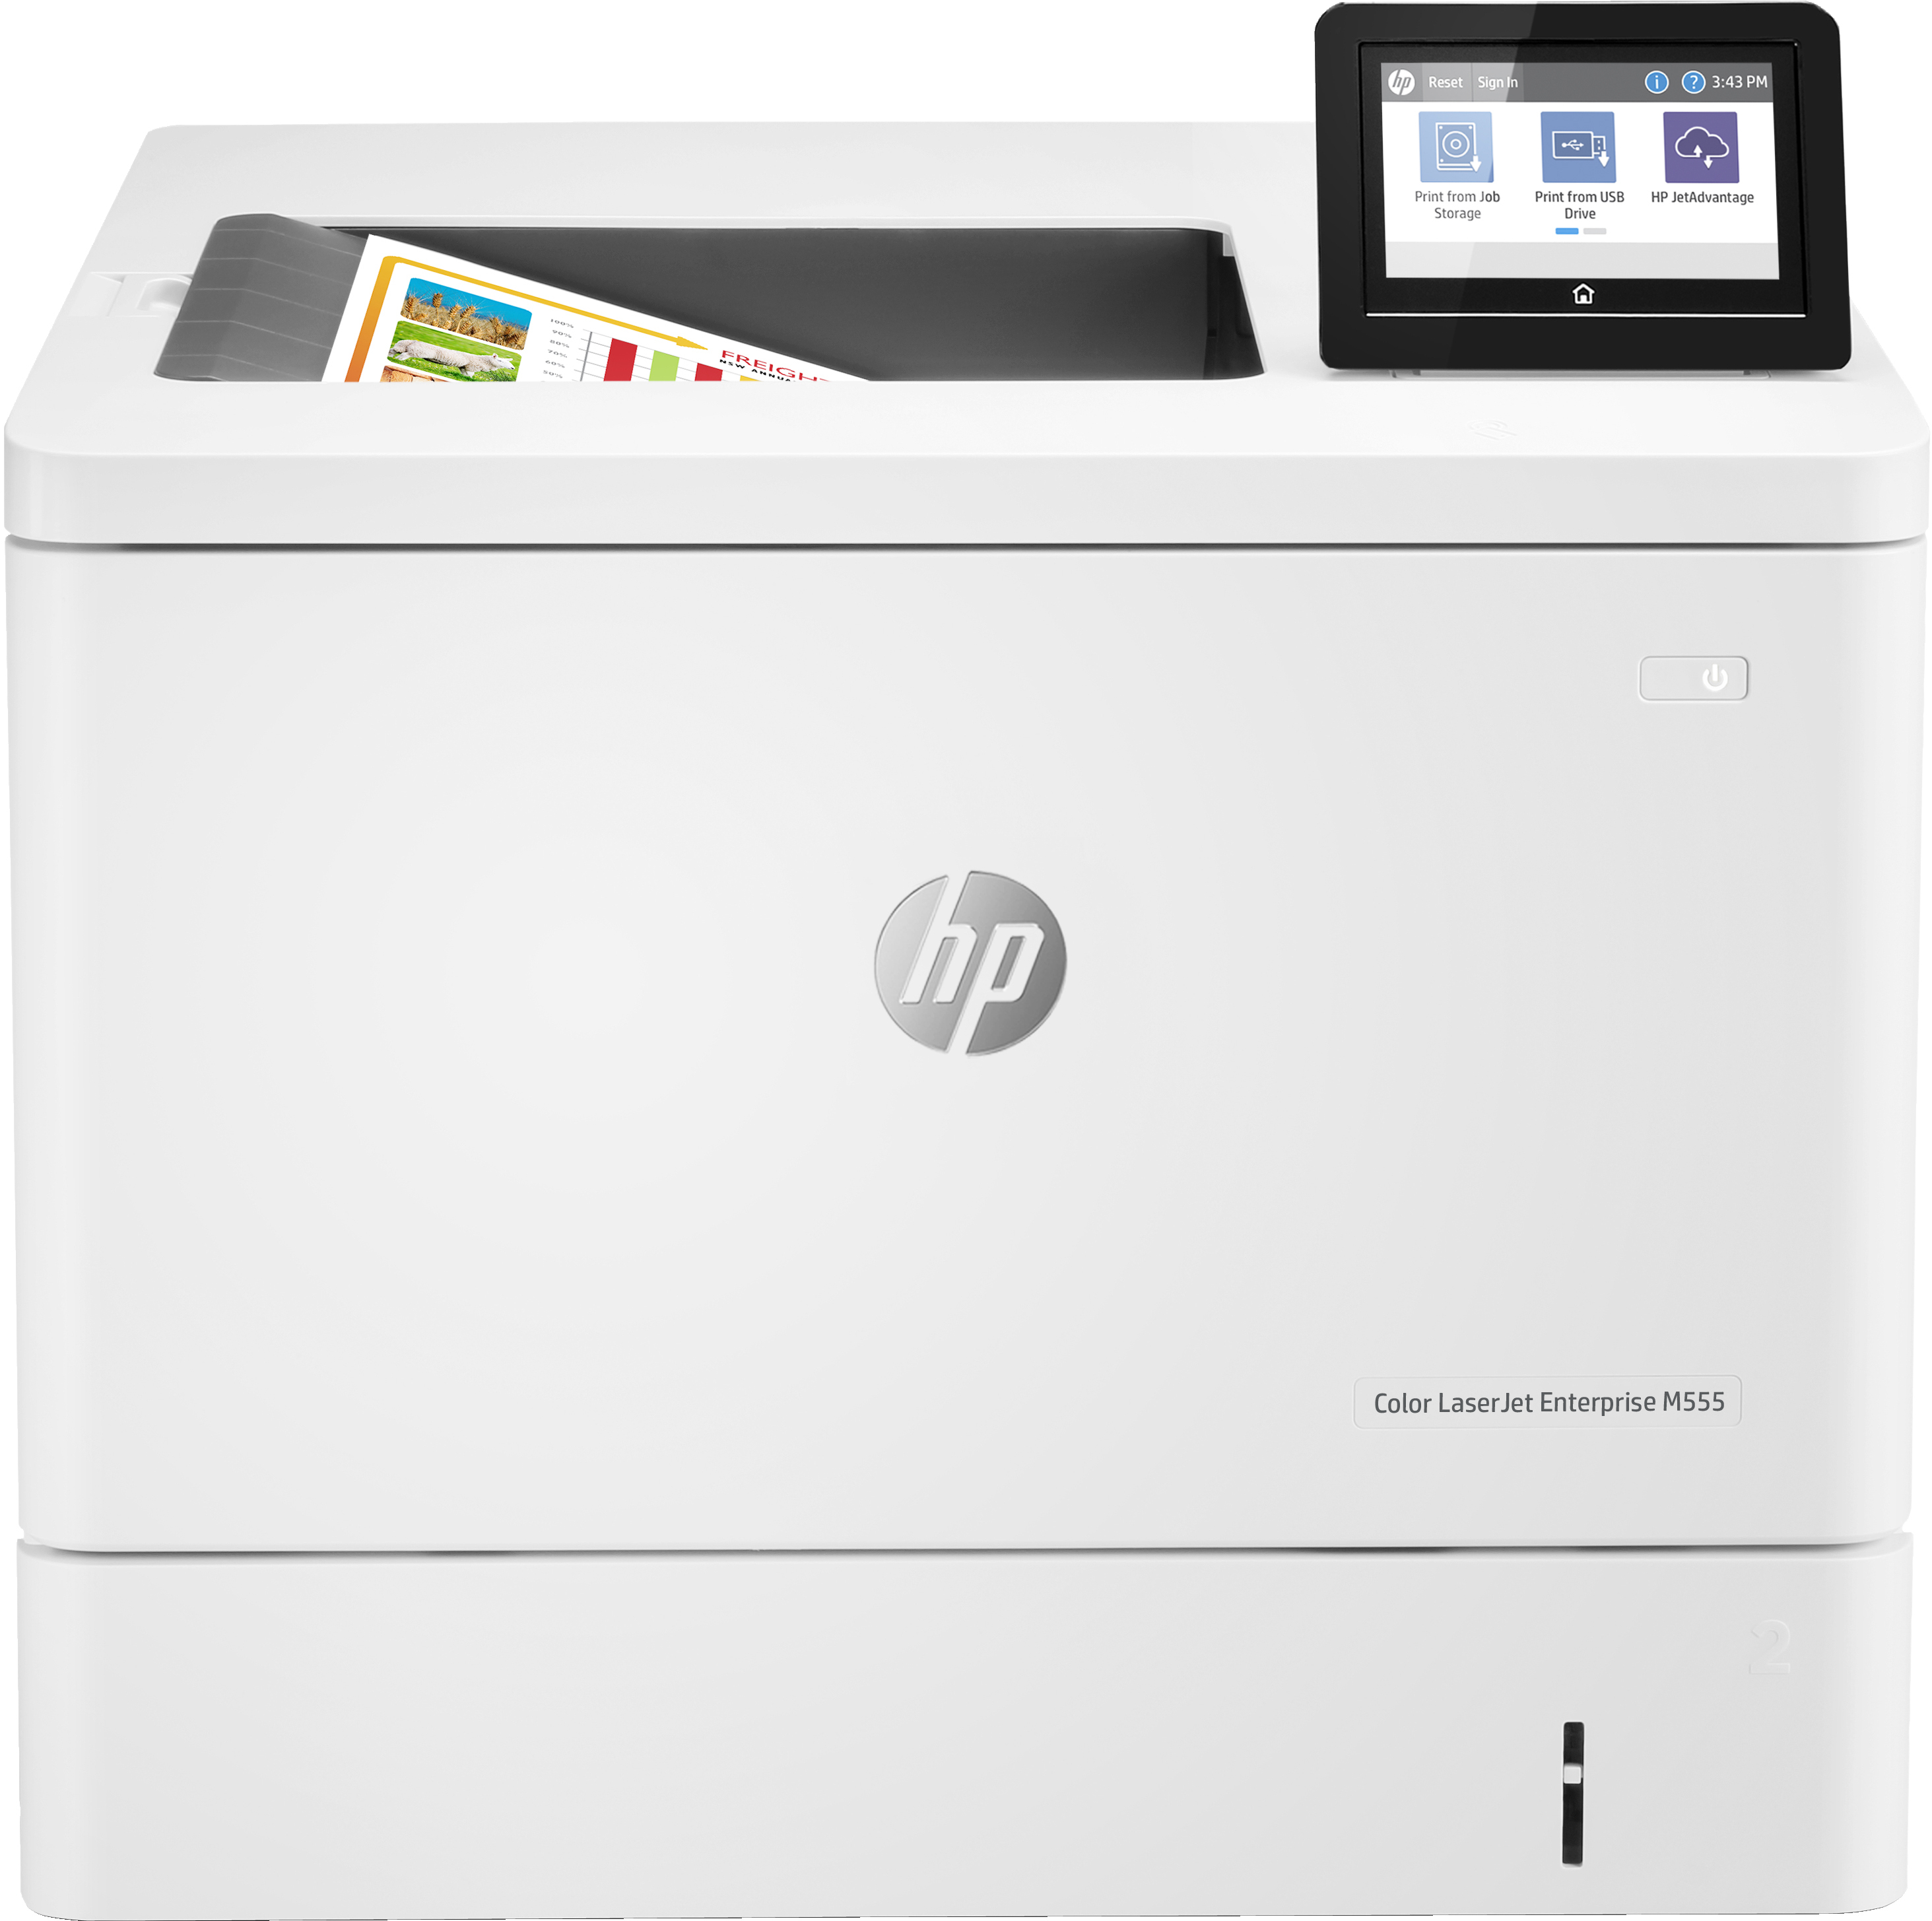 HP HP Color LaserJet Enterprise M555dn, Color, Printer voor Print, Dubbelzijdig printen